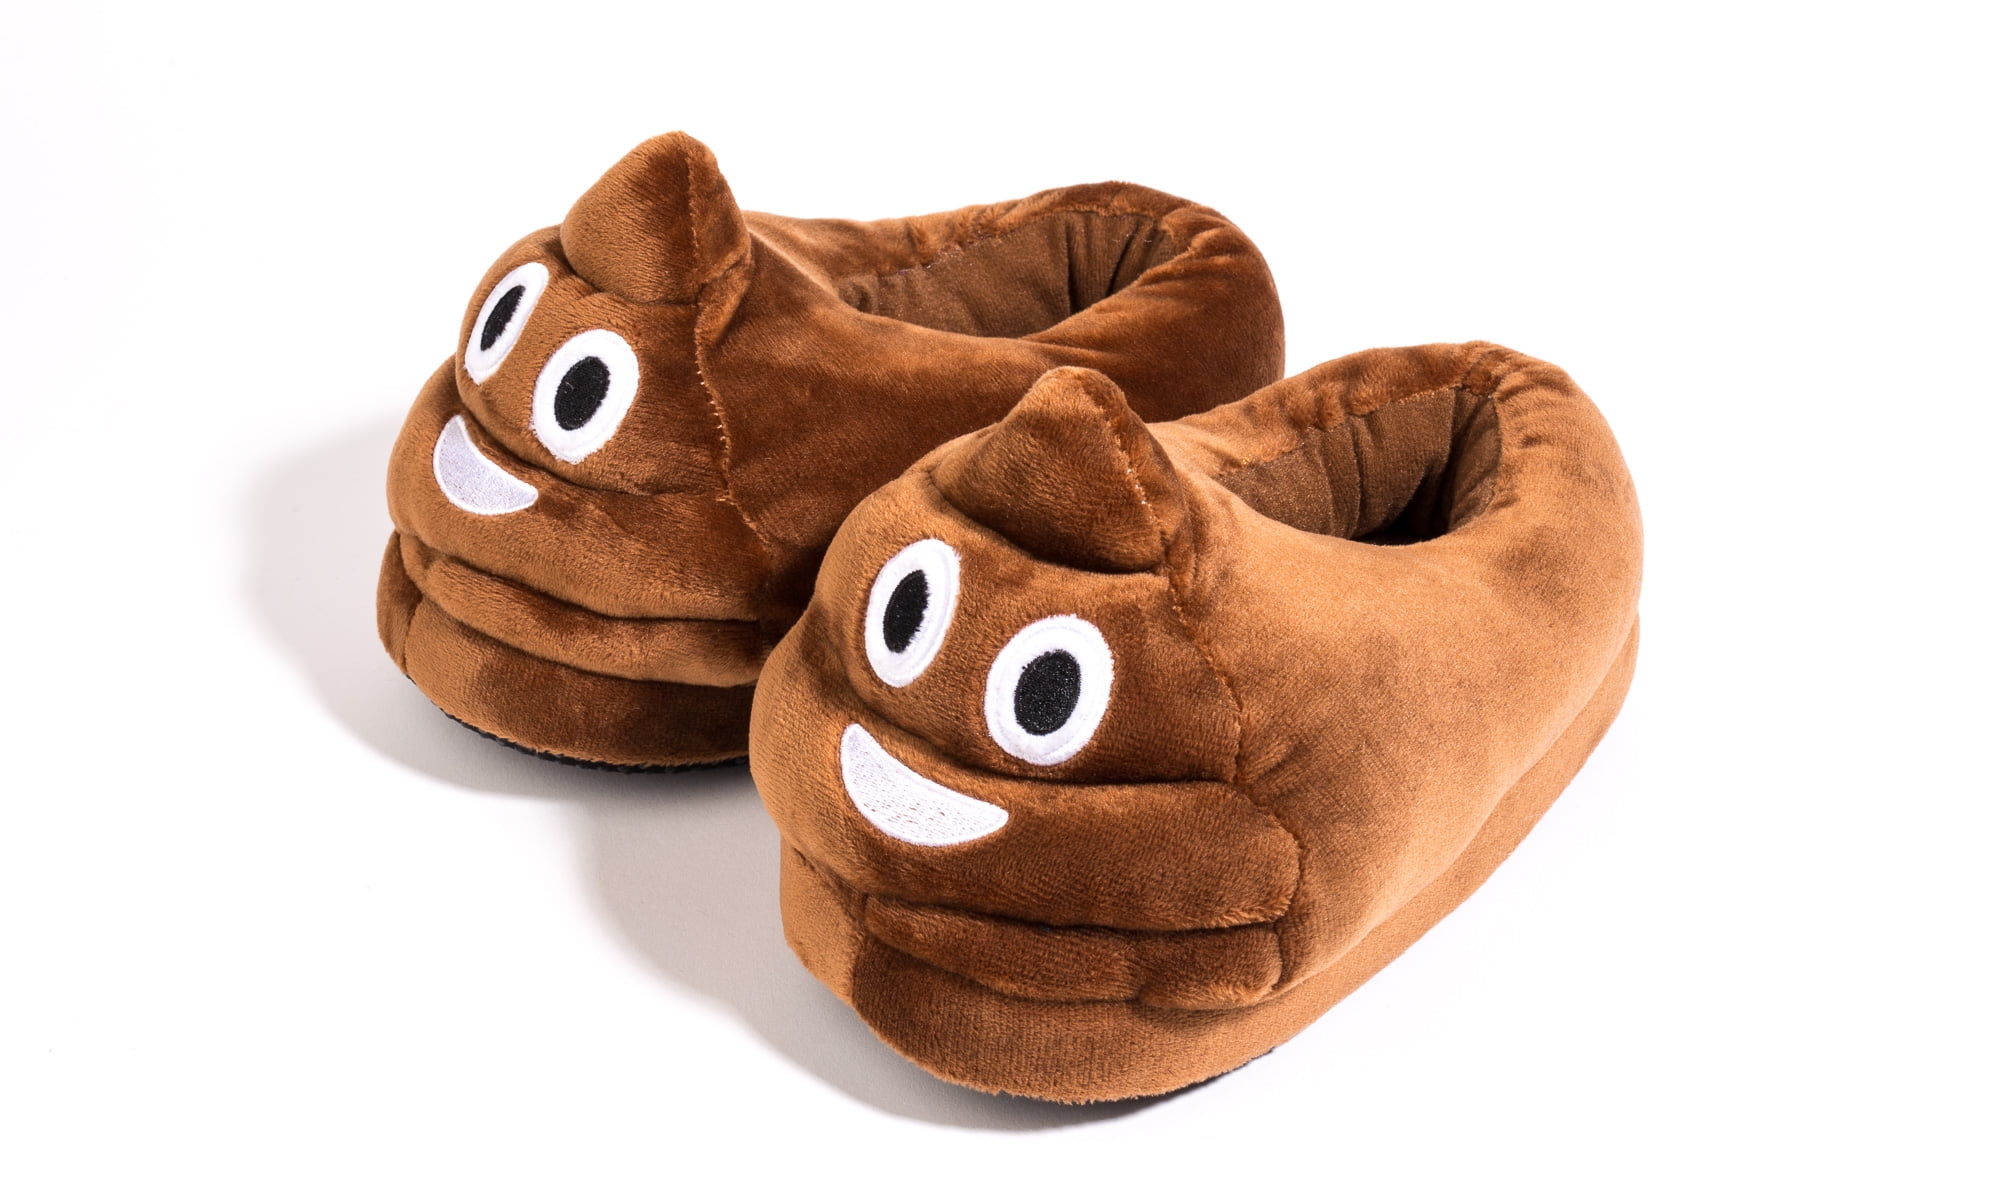 poop emoji slippers walmart